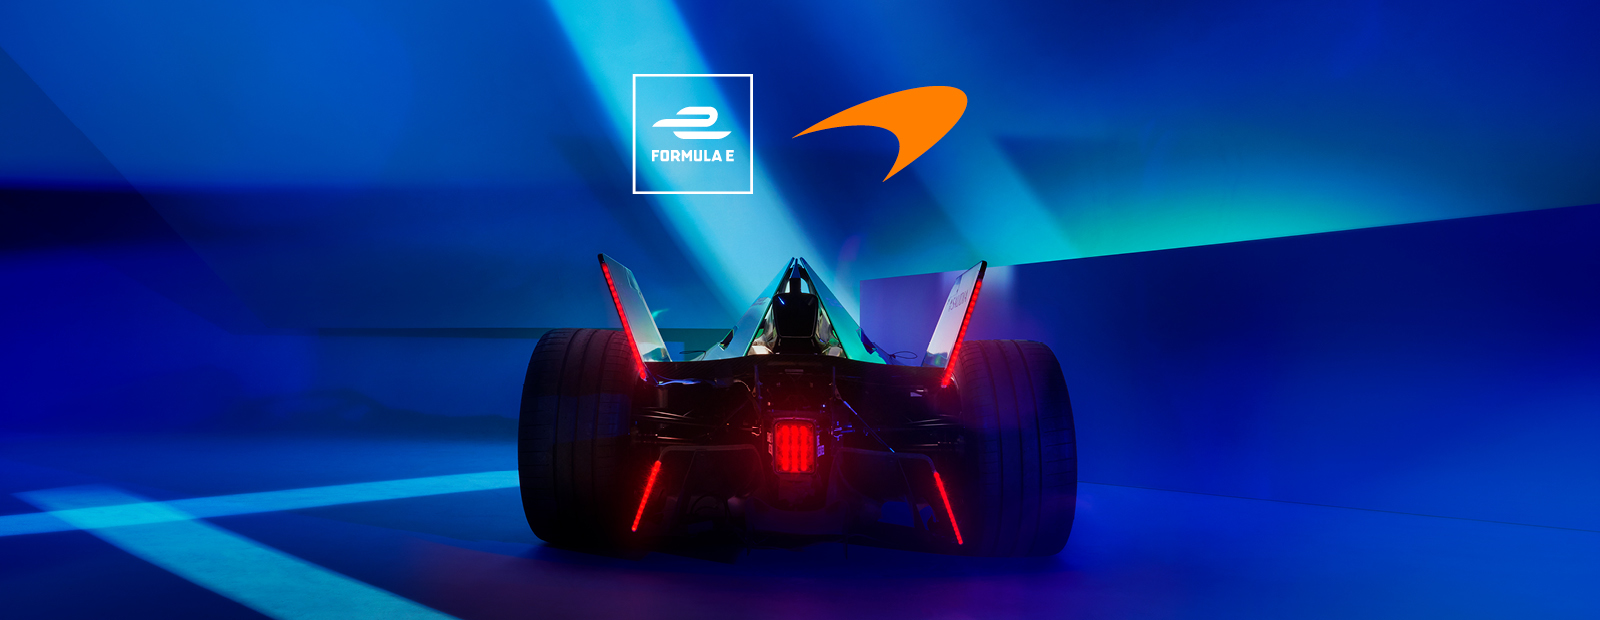 FE – McLaren Racing to compete in the ABB FIA Formula E World Championship